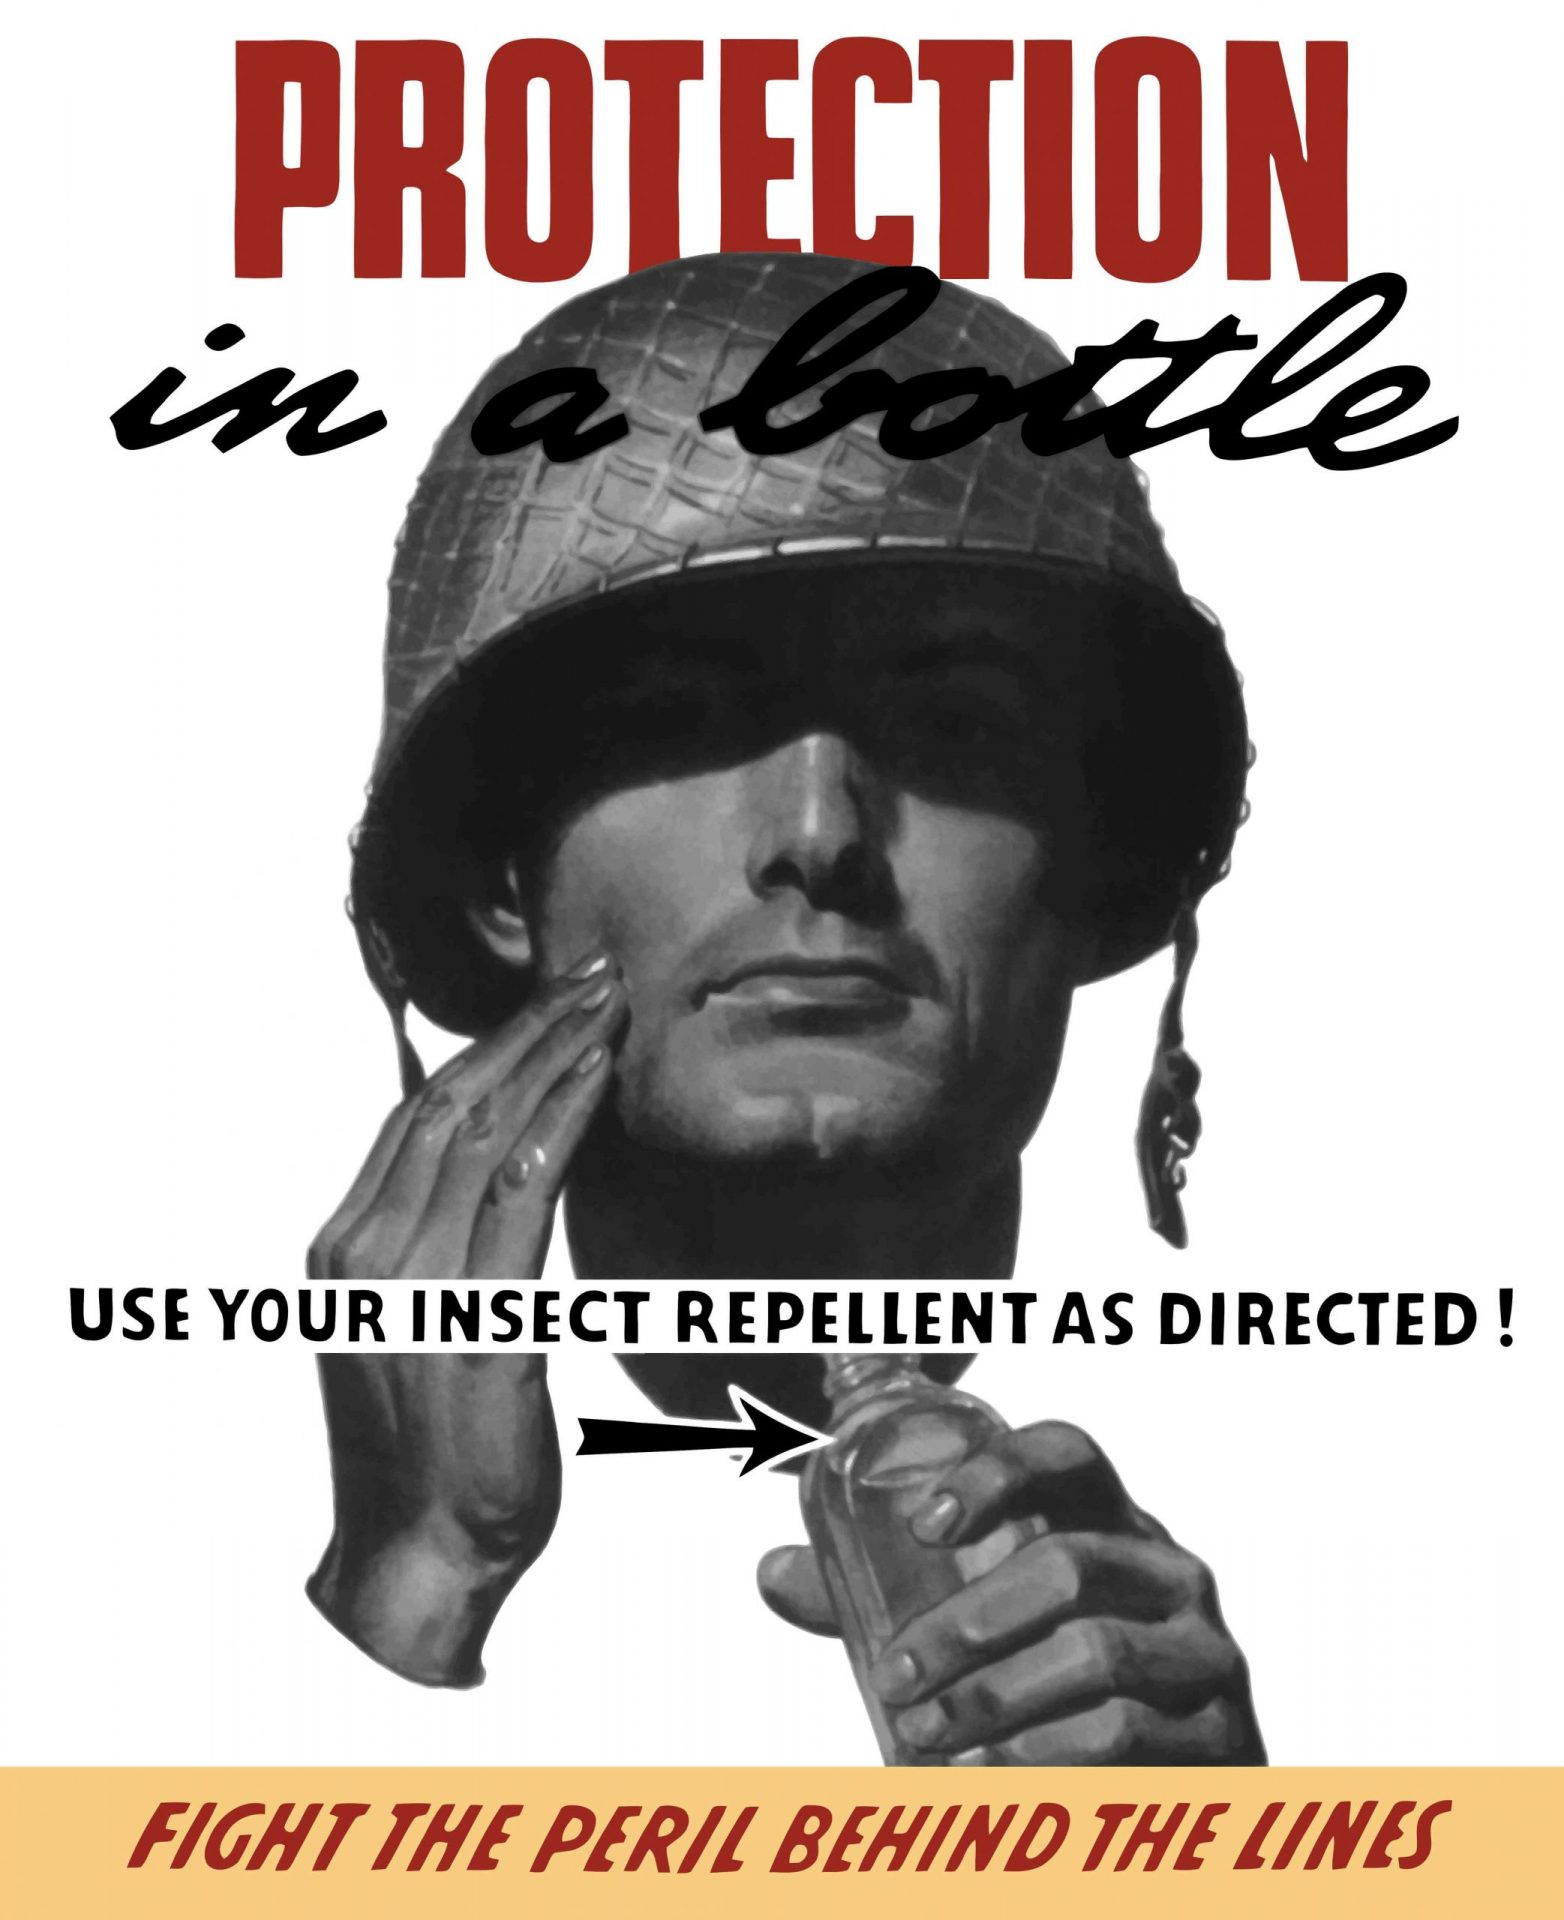 Cartel de propaganda de la Segunda Guerra Mundial de un soldado aplicando repelente de insectos